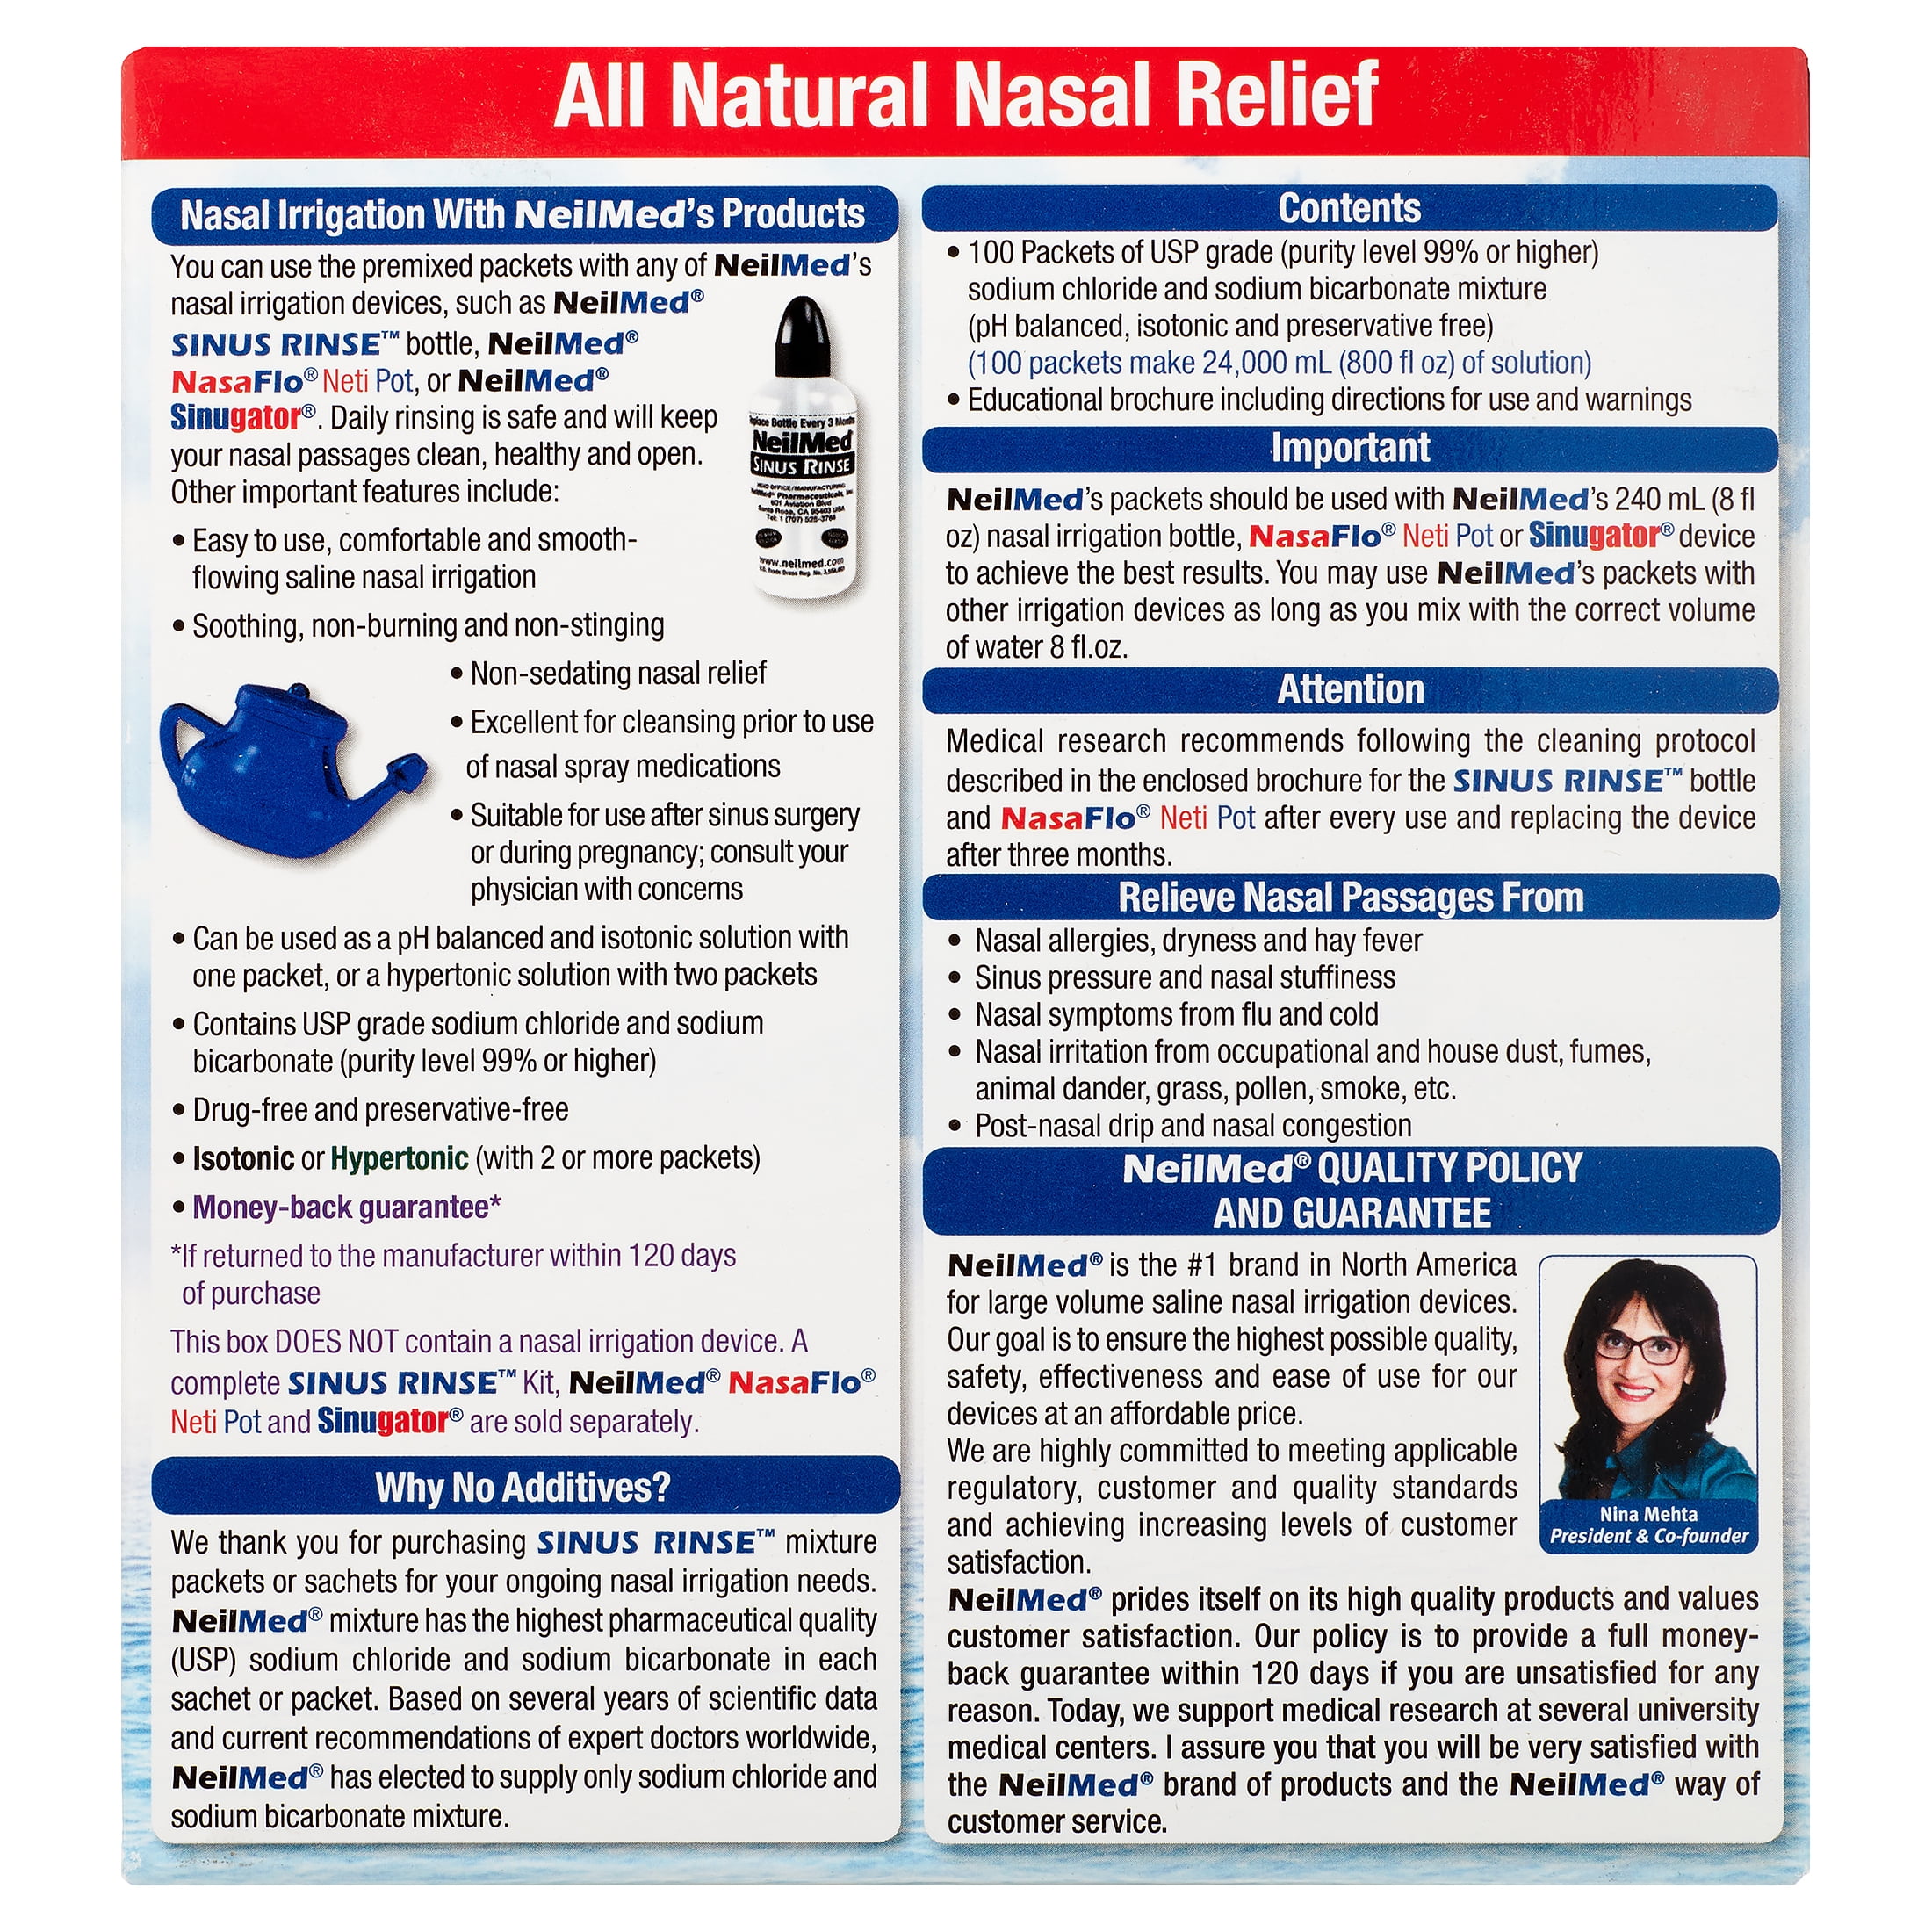 Nasal rinse salt for nasal douche - MediSense